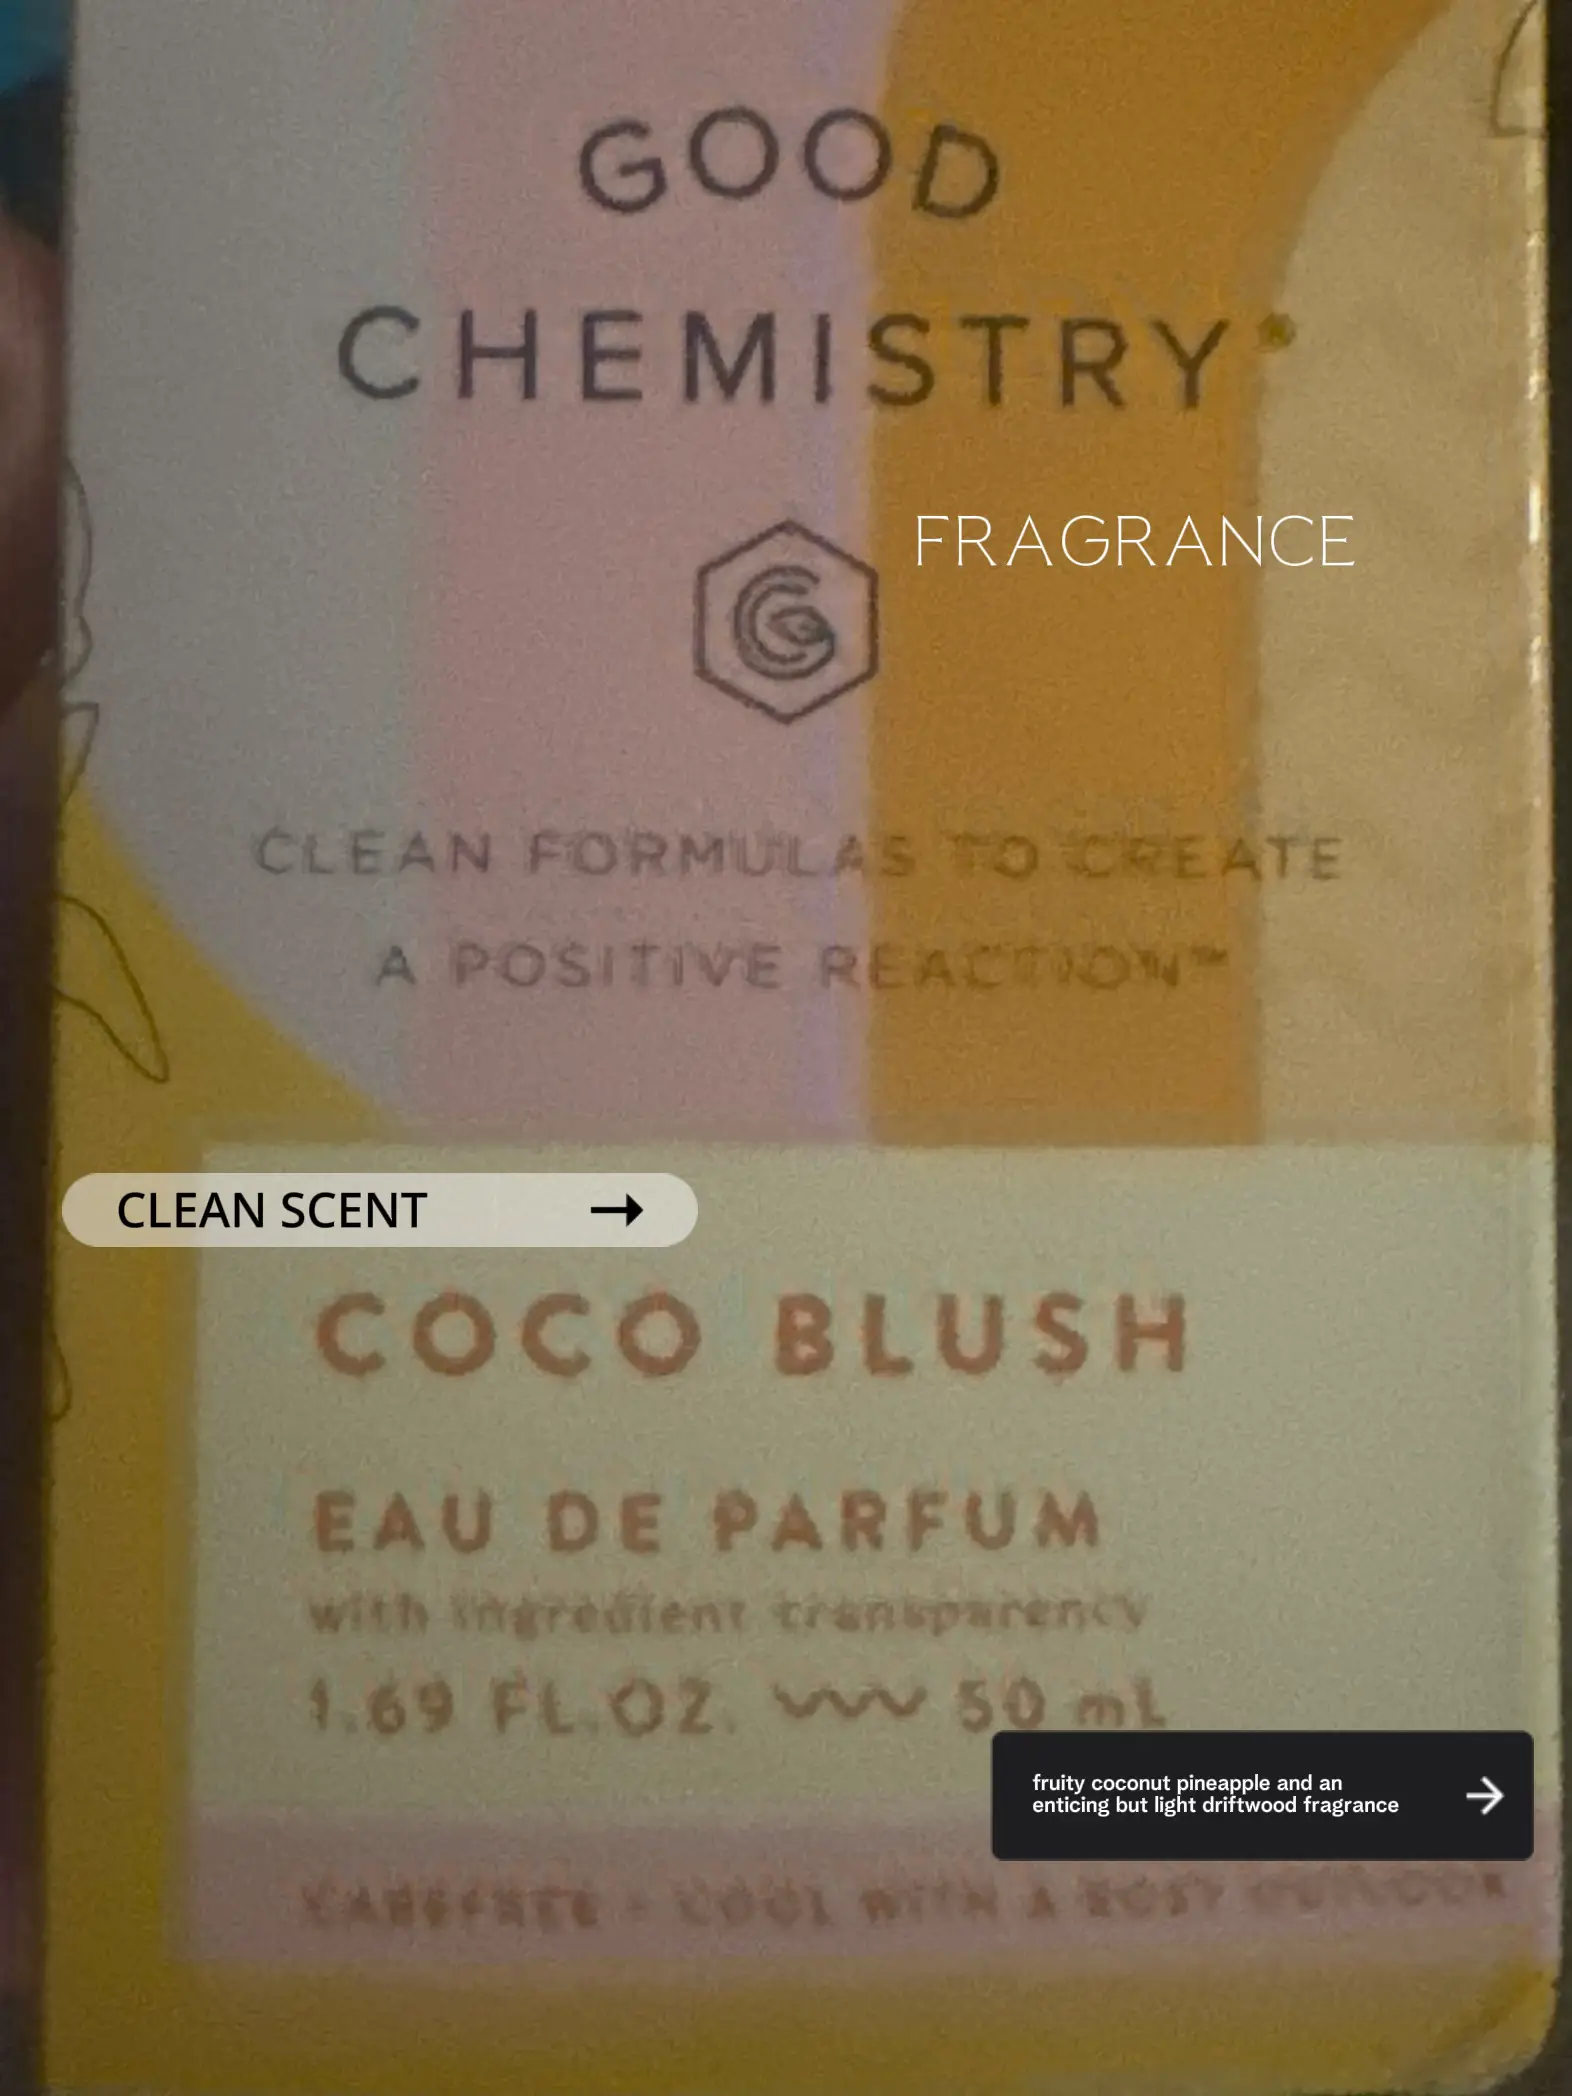 Good Chemistry Eau De Parfum, Coco Blush - 1.69 fl oz